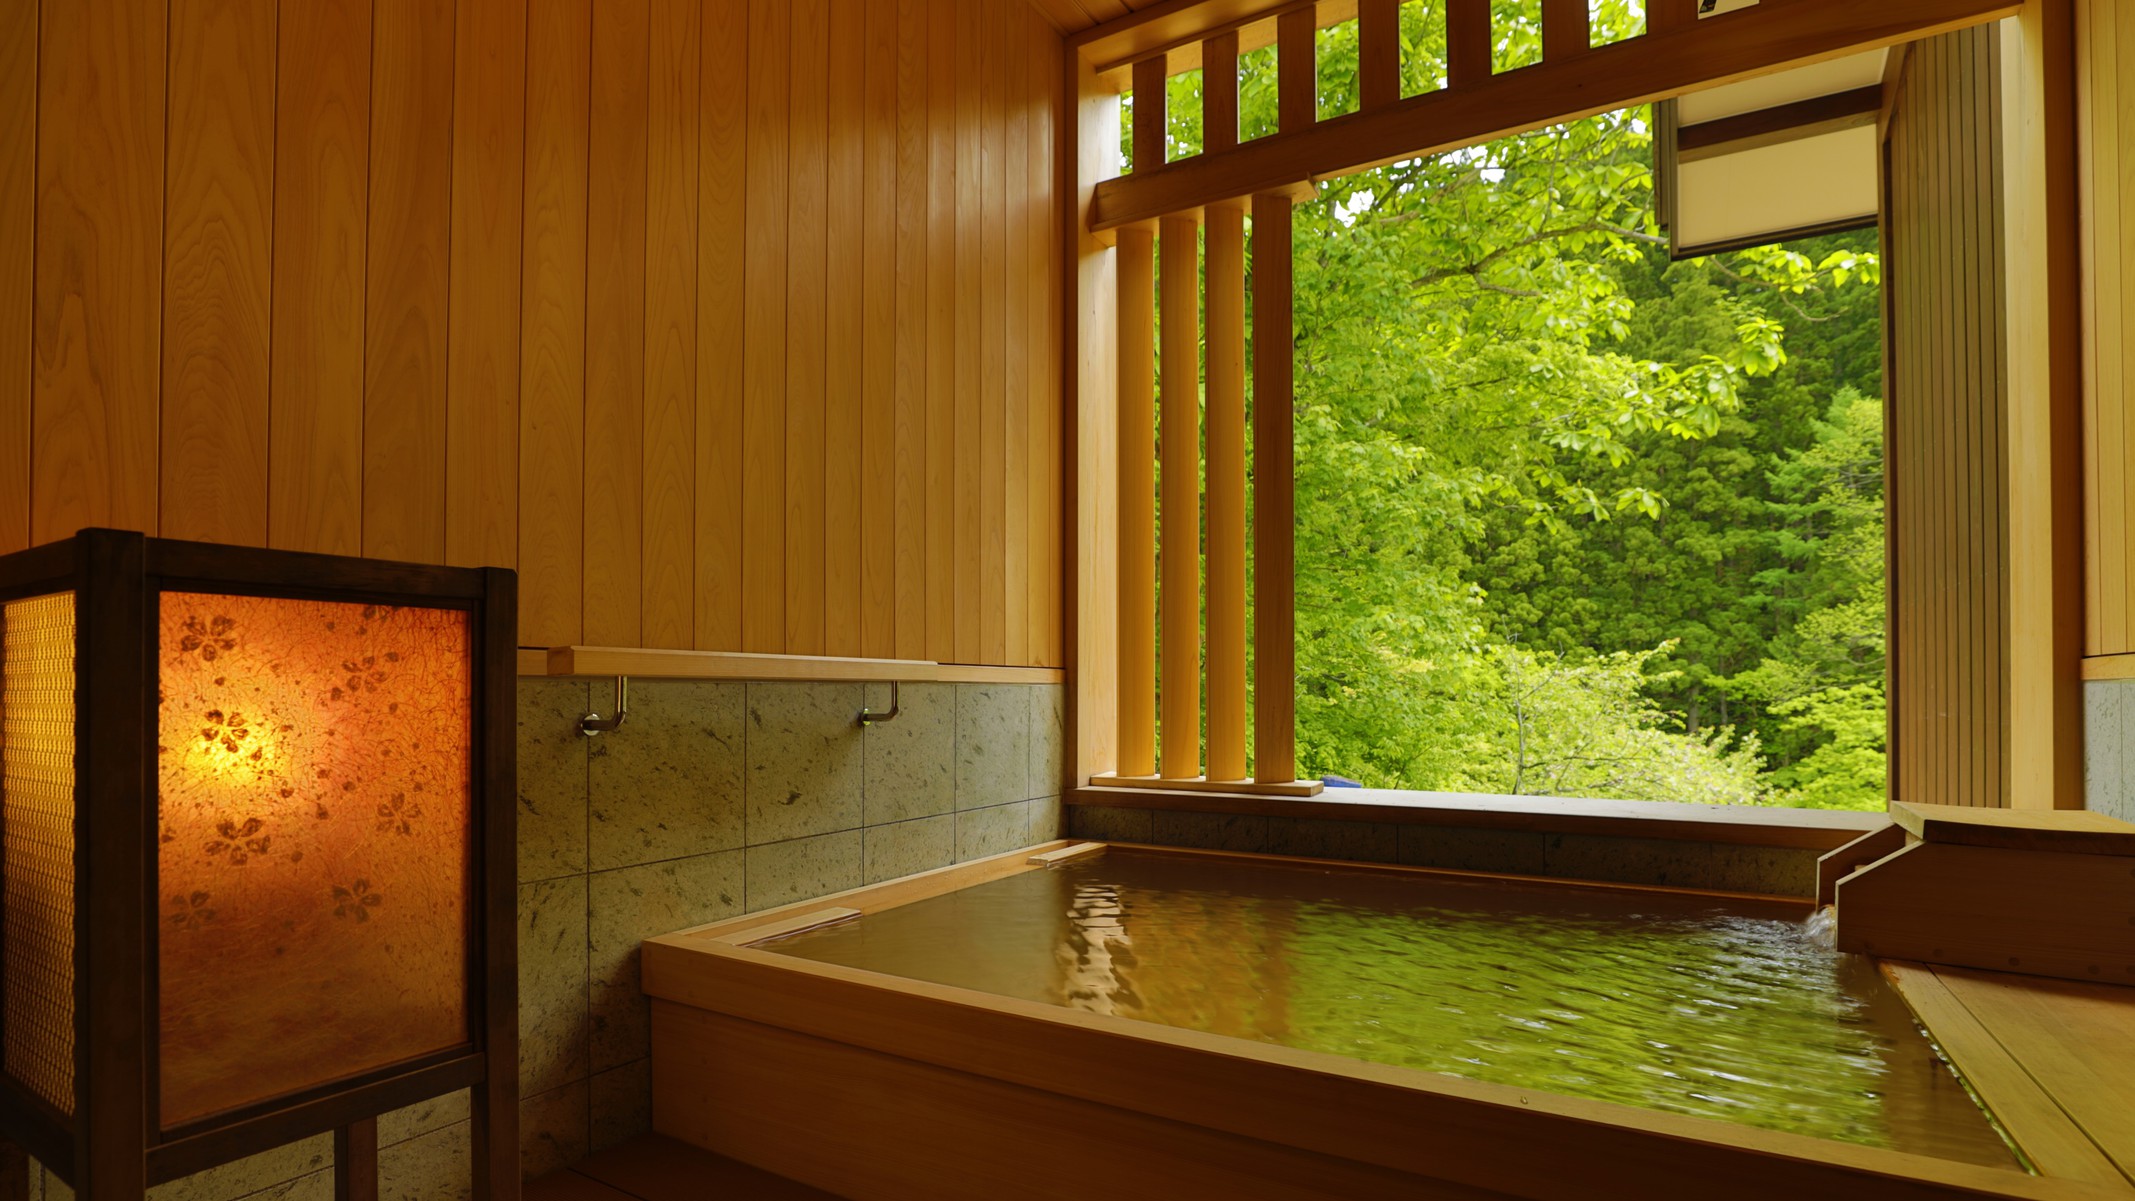 【貸切風呂】「桜雲」檜でできた風呂で木の香りを感じながら疲れを癒して。